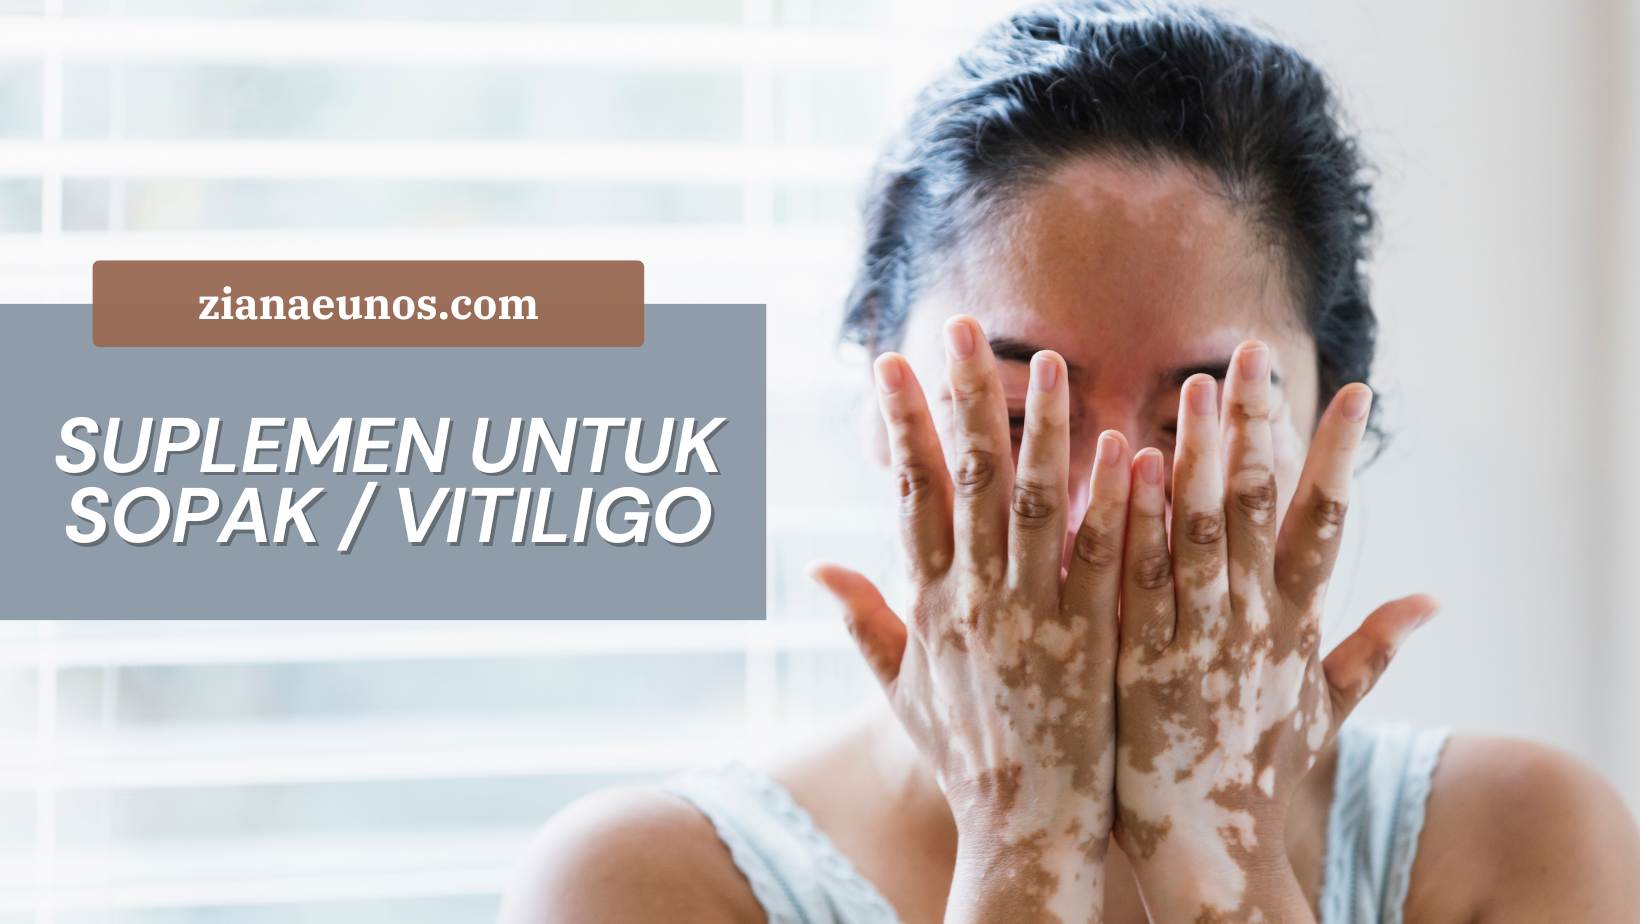 shaklee untuk sopak vitiligo